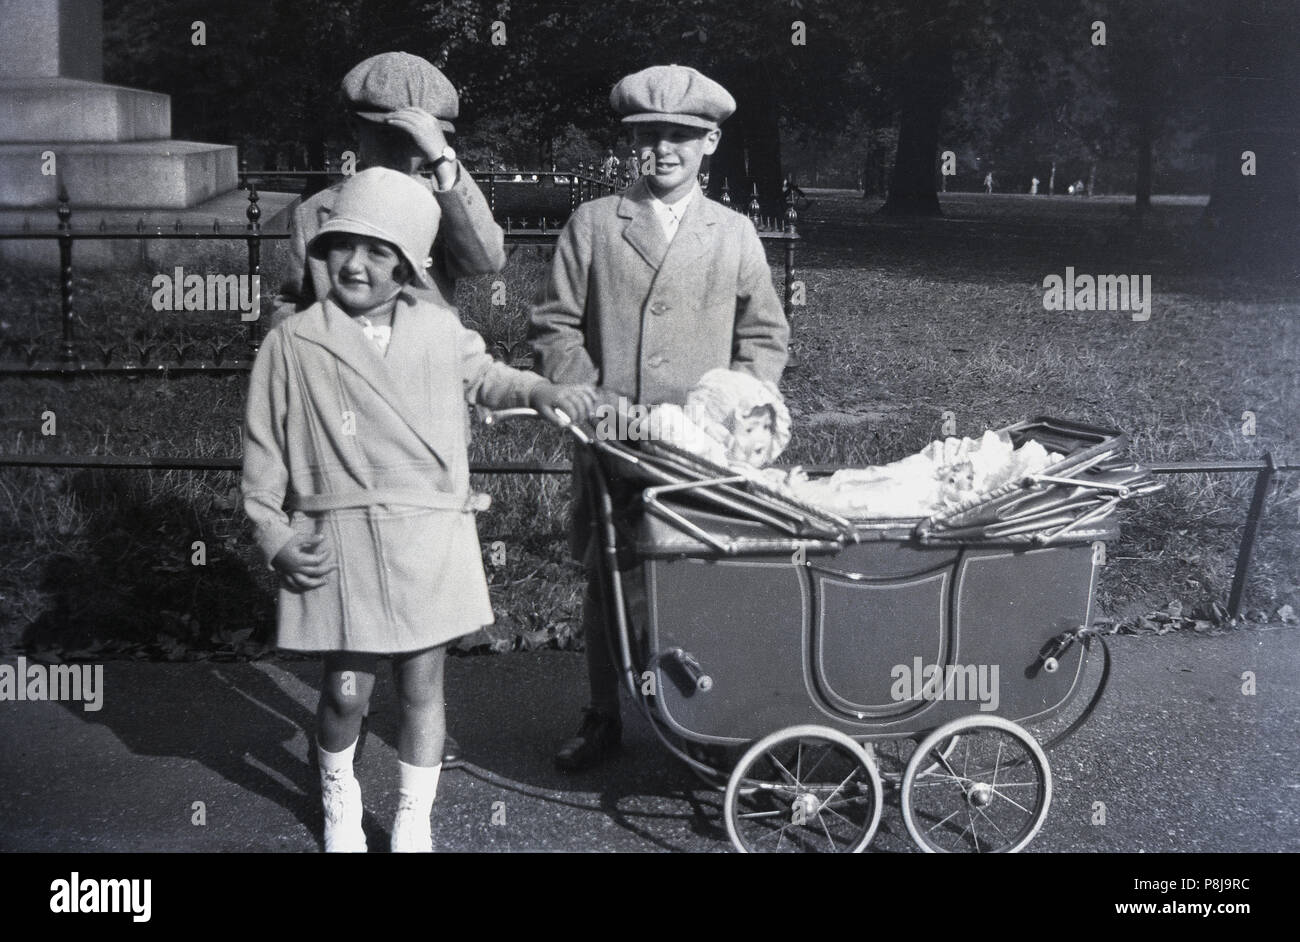 1920s, historische, drei elegant gekleidete Kinder, die von einem Park das Tragen der Kleidung des Tages - die beiden Jungs haben beide flacher Deckel Hüte auf", newsboy' mit Stil - mit den jungen Mädchen Stolz von pram ihre hübschen Puppen, England, UK. Stockfoto